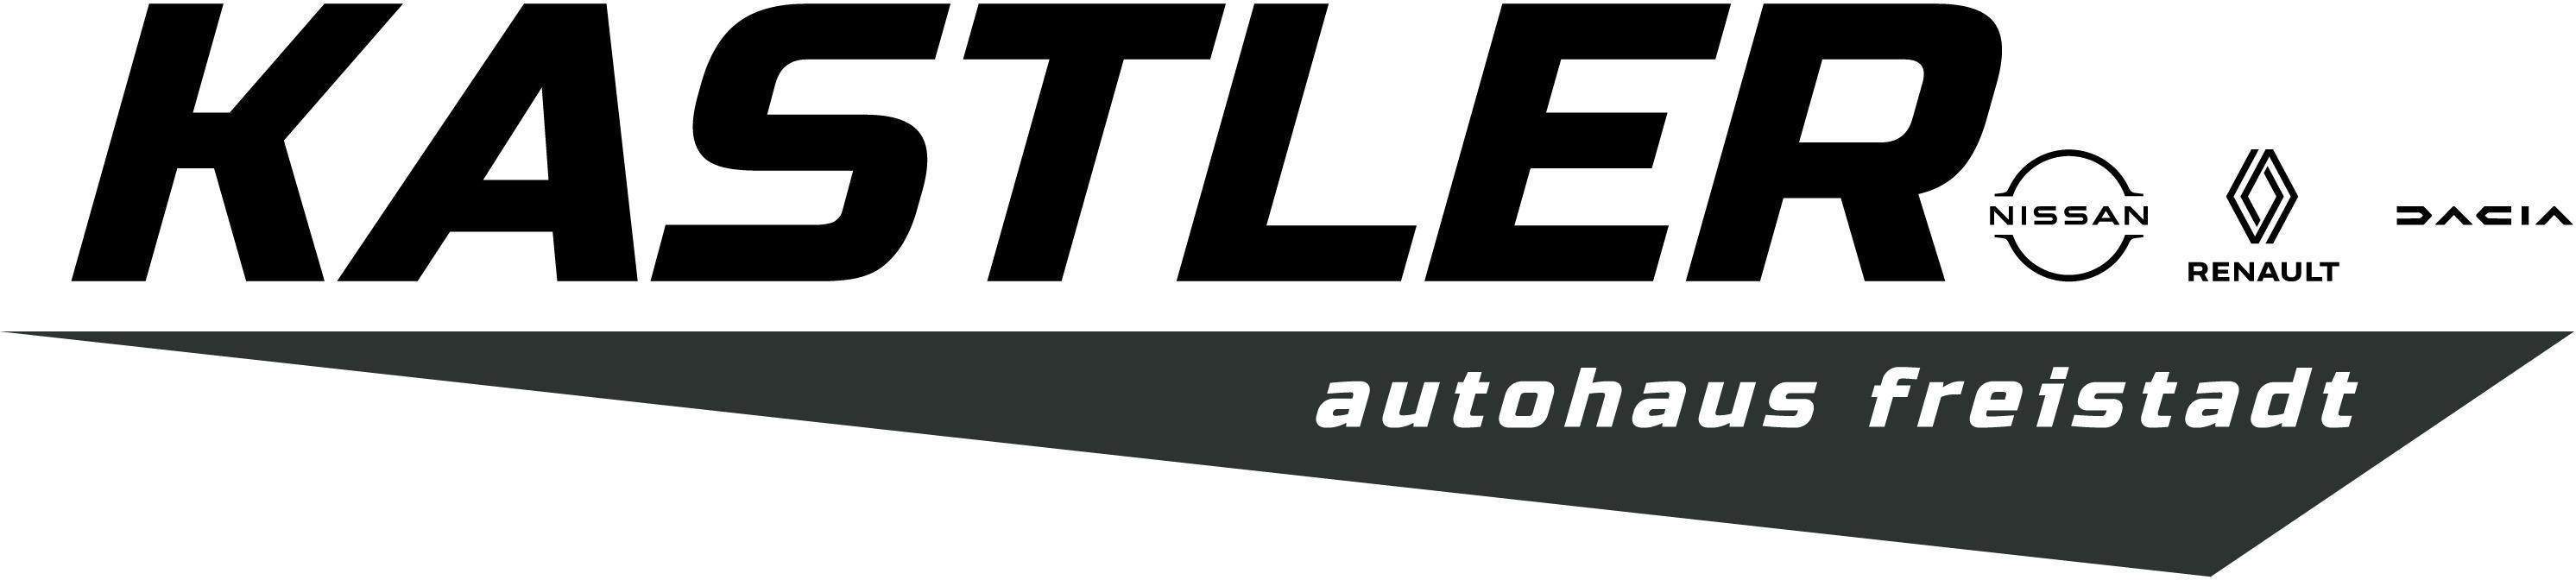 Logo Autohaus Kastler GmbH